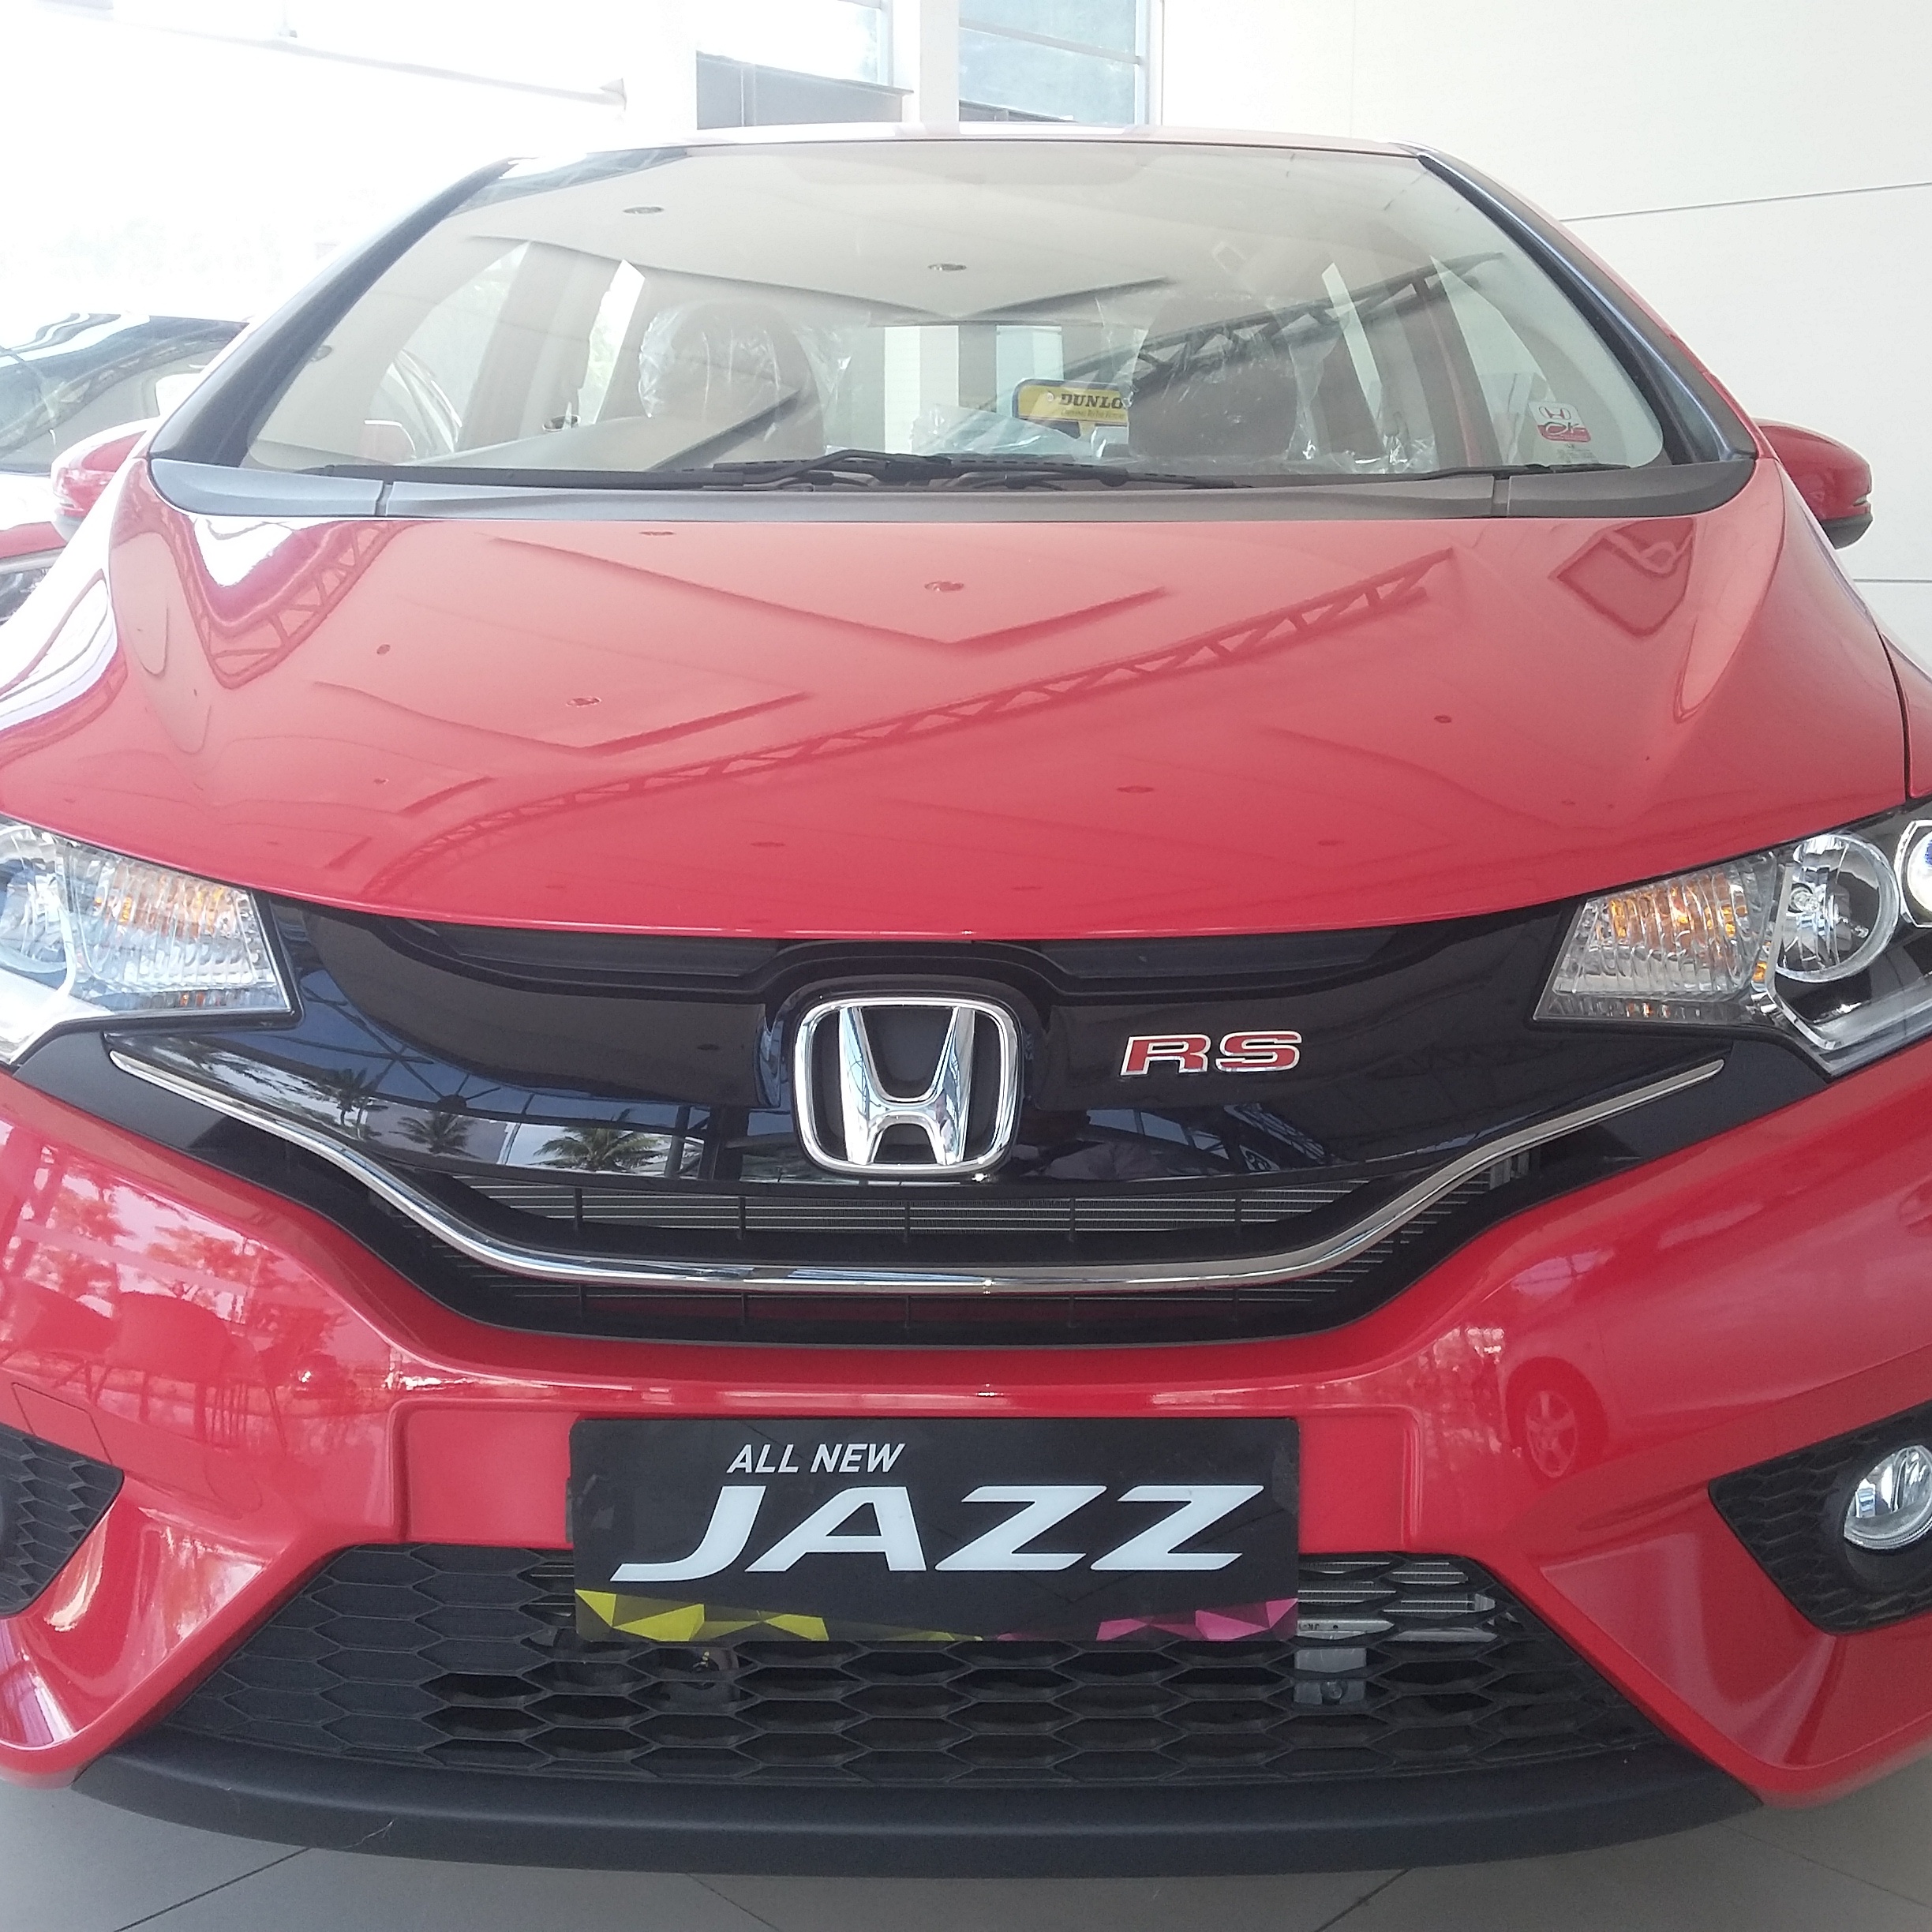  Foto  Honda Jazz  Rs  Warna Merah  Modifikasi Mobil 